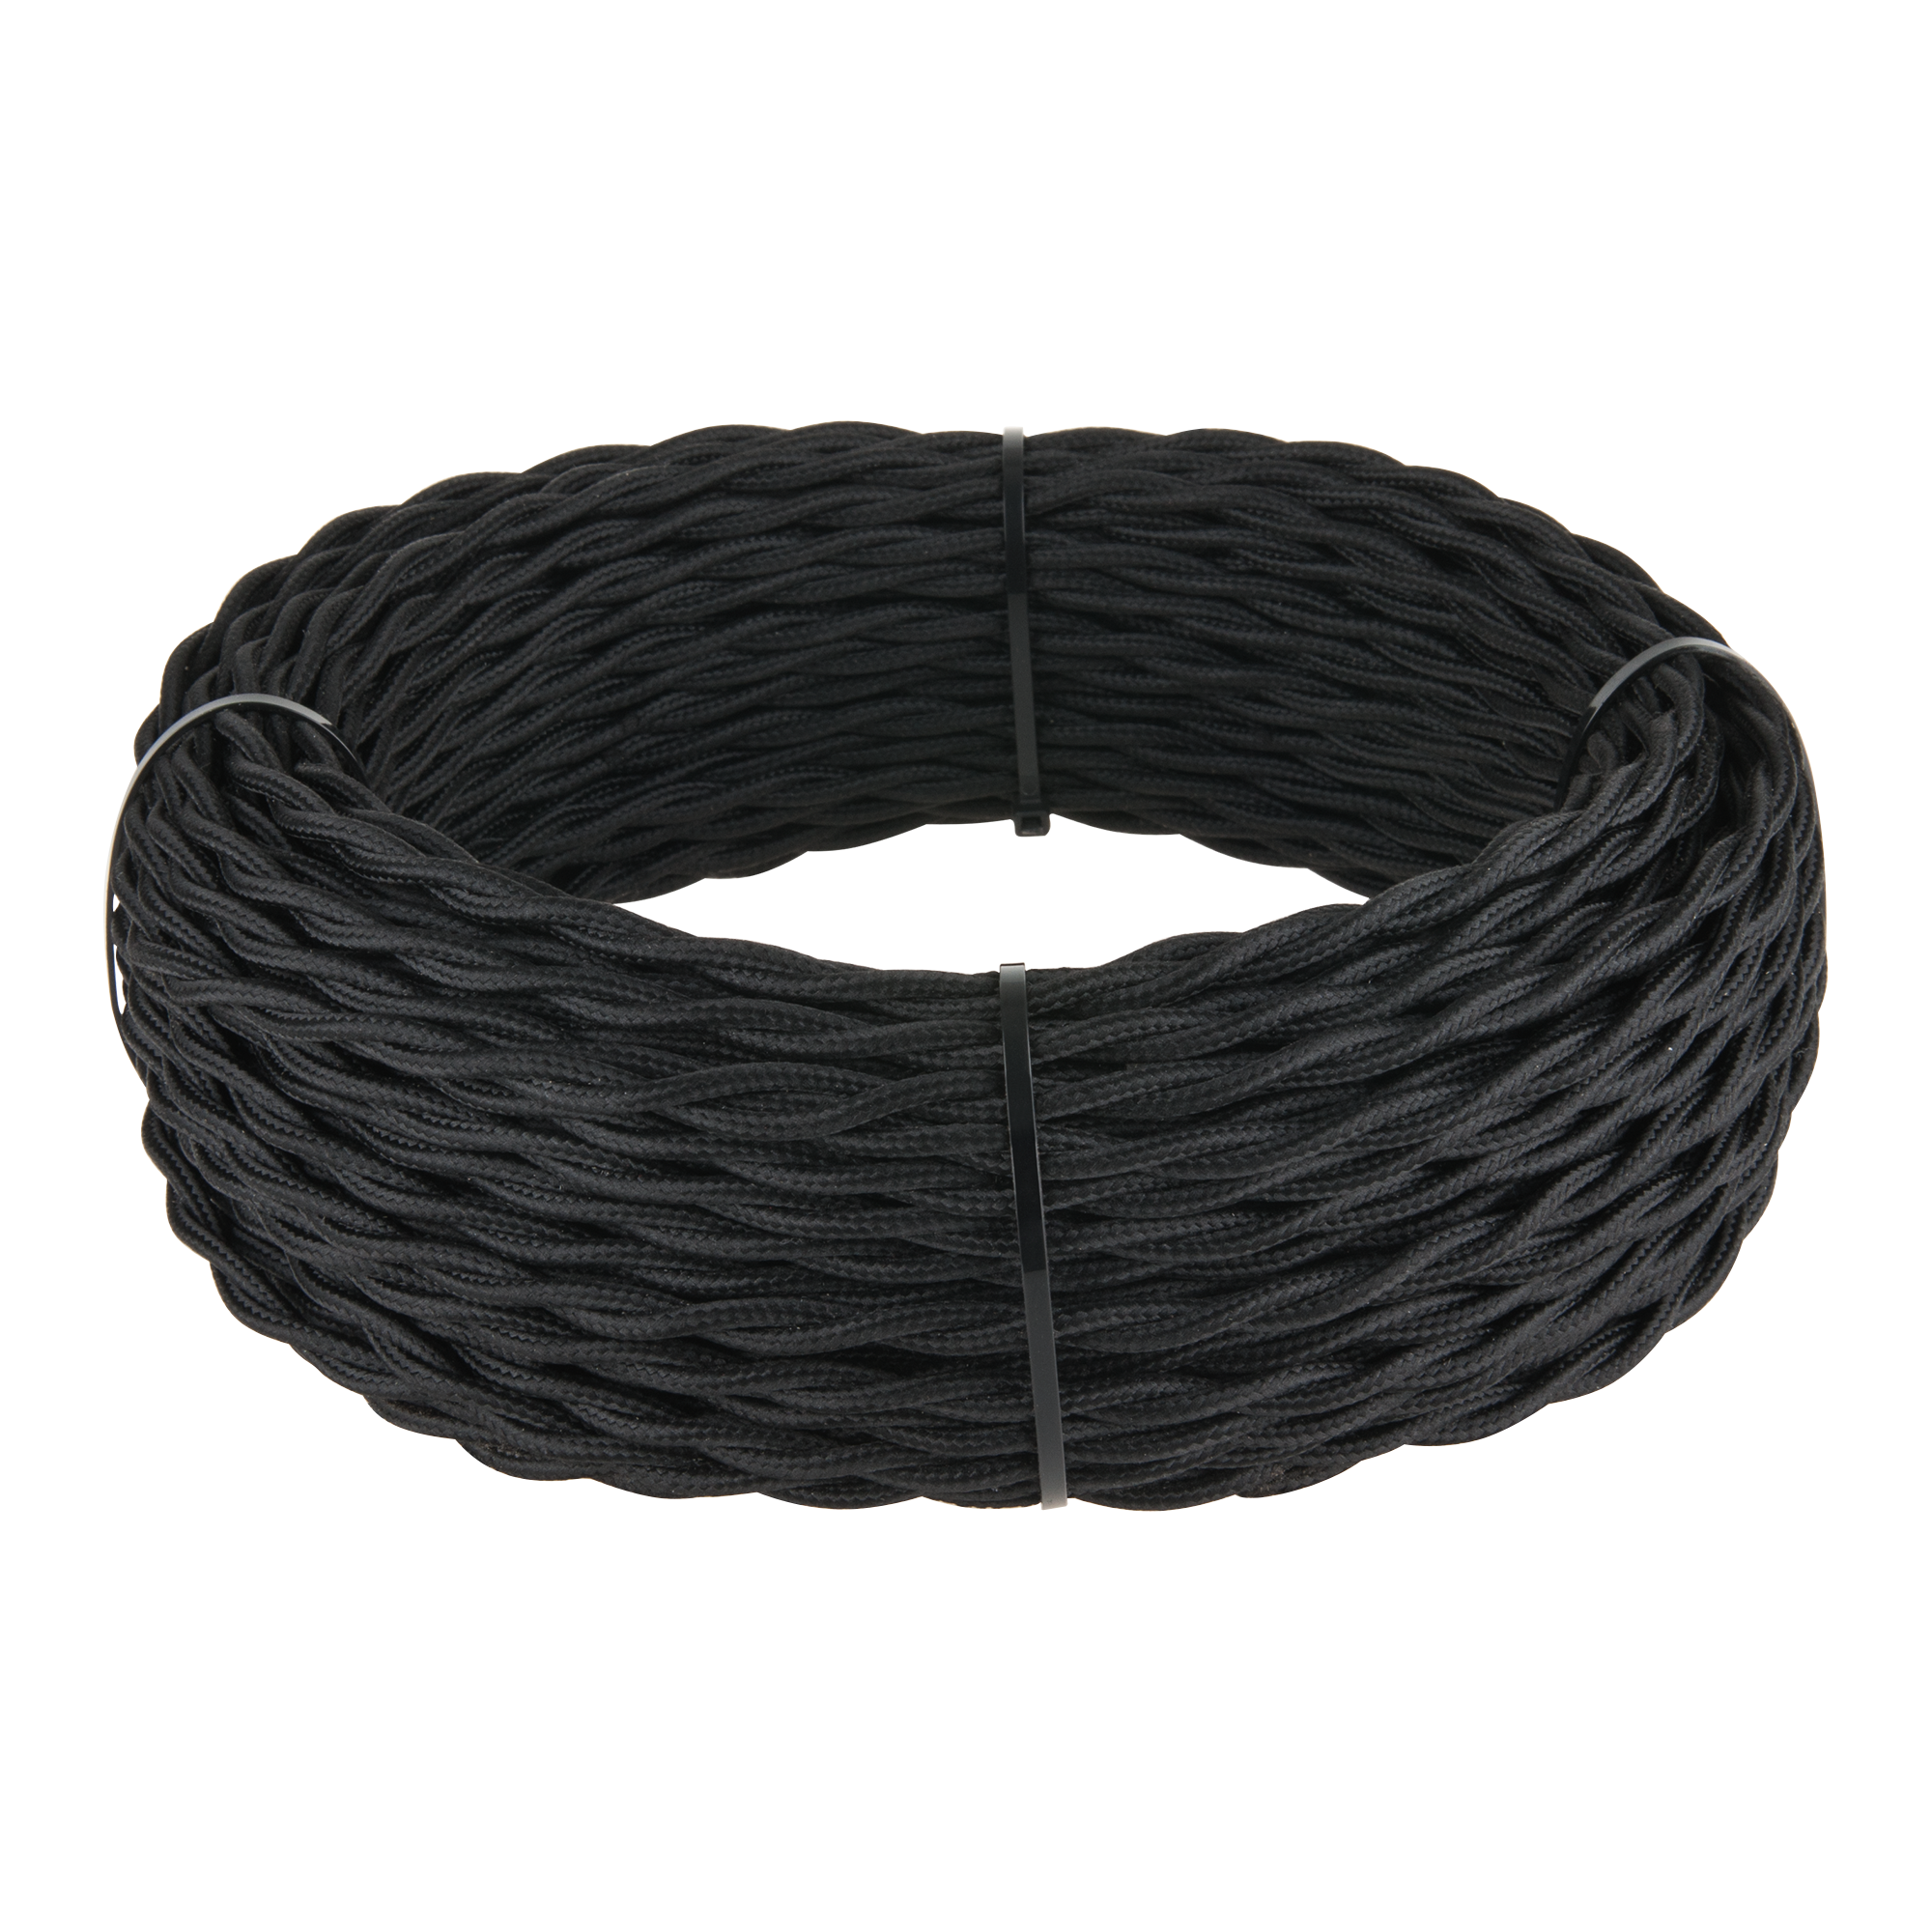 Ретро кабель витой 3х2,5 (черный) 50 м Werkel Ретро кабель черный W6453608. Фото 1